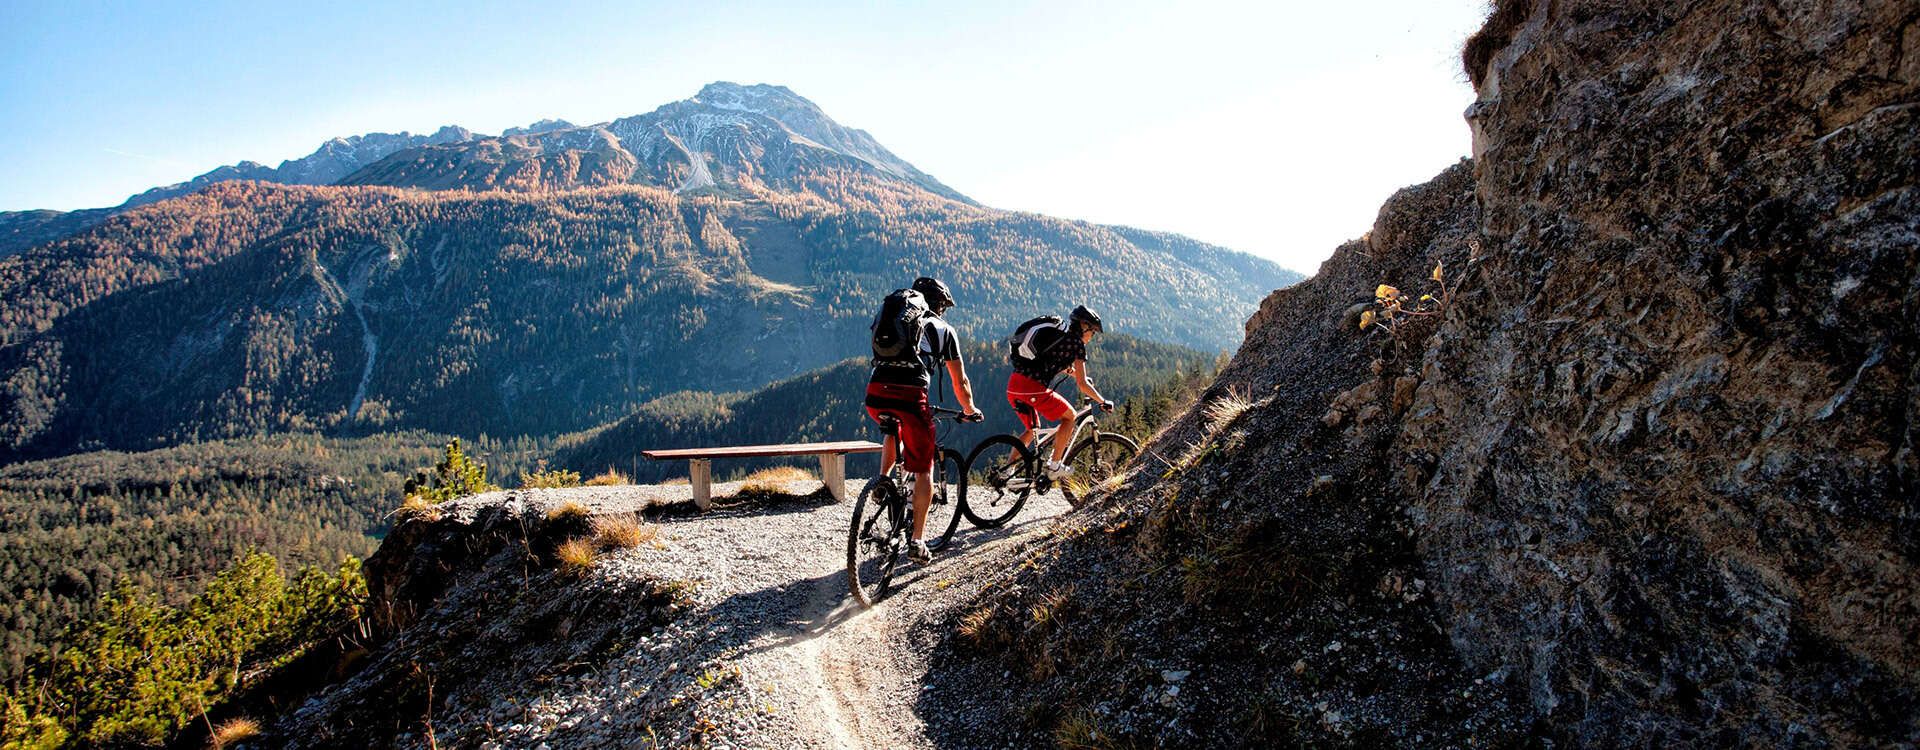 Mountain bike trail Blindsee